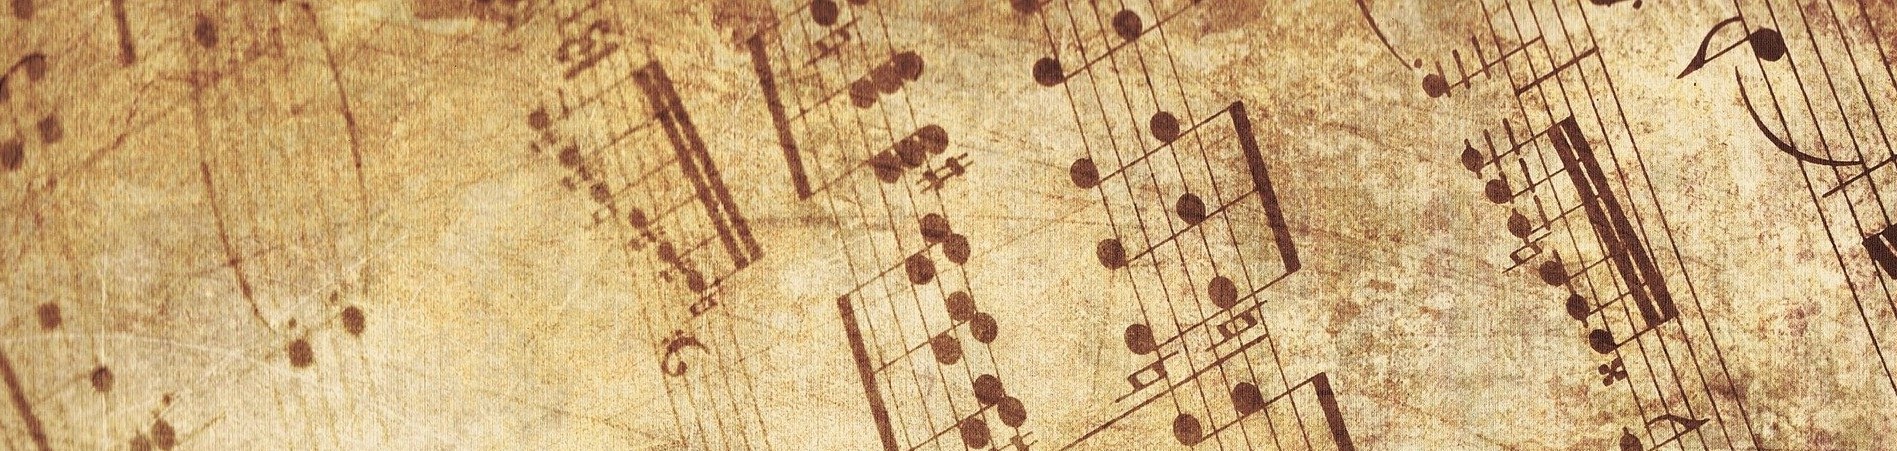 Blasorchesternoten Stari Bunar - Titelbild